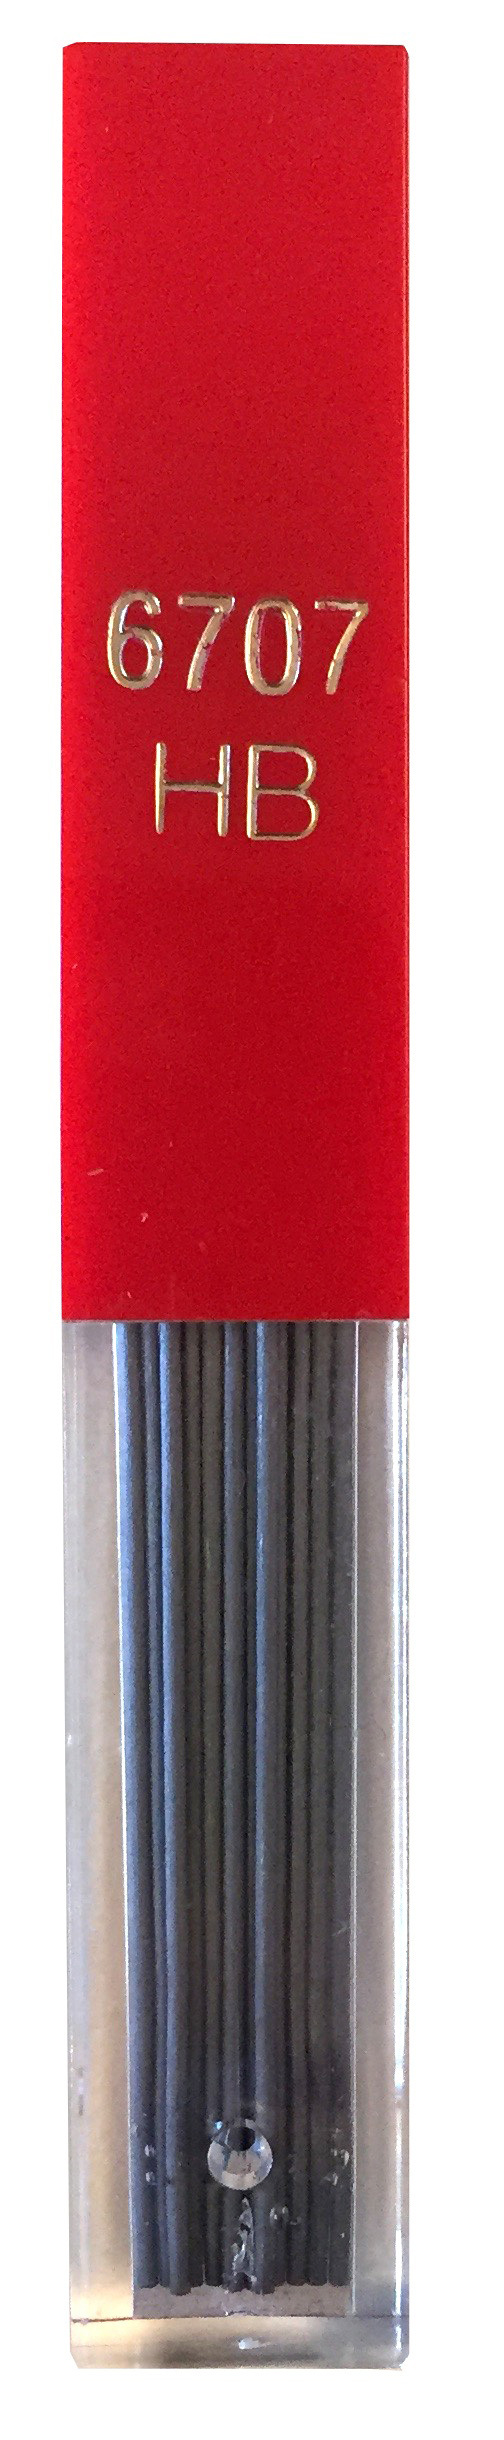 CARAN D'ACHE Minen Graphite HB 6707.350 0,7mm 12 Stück